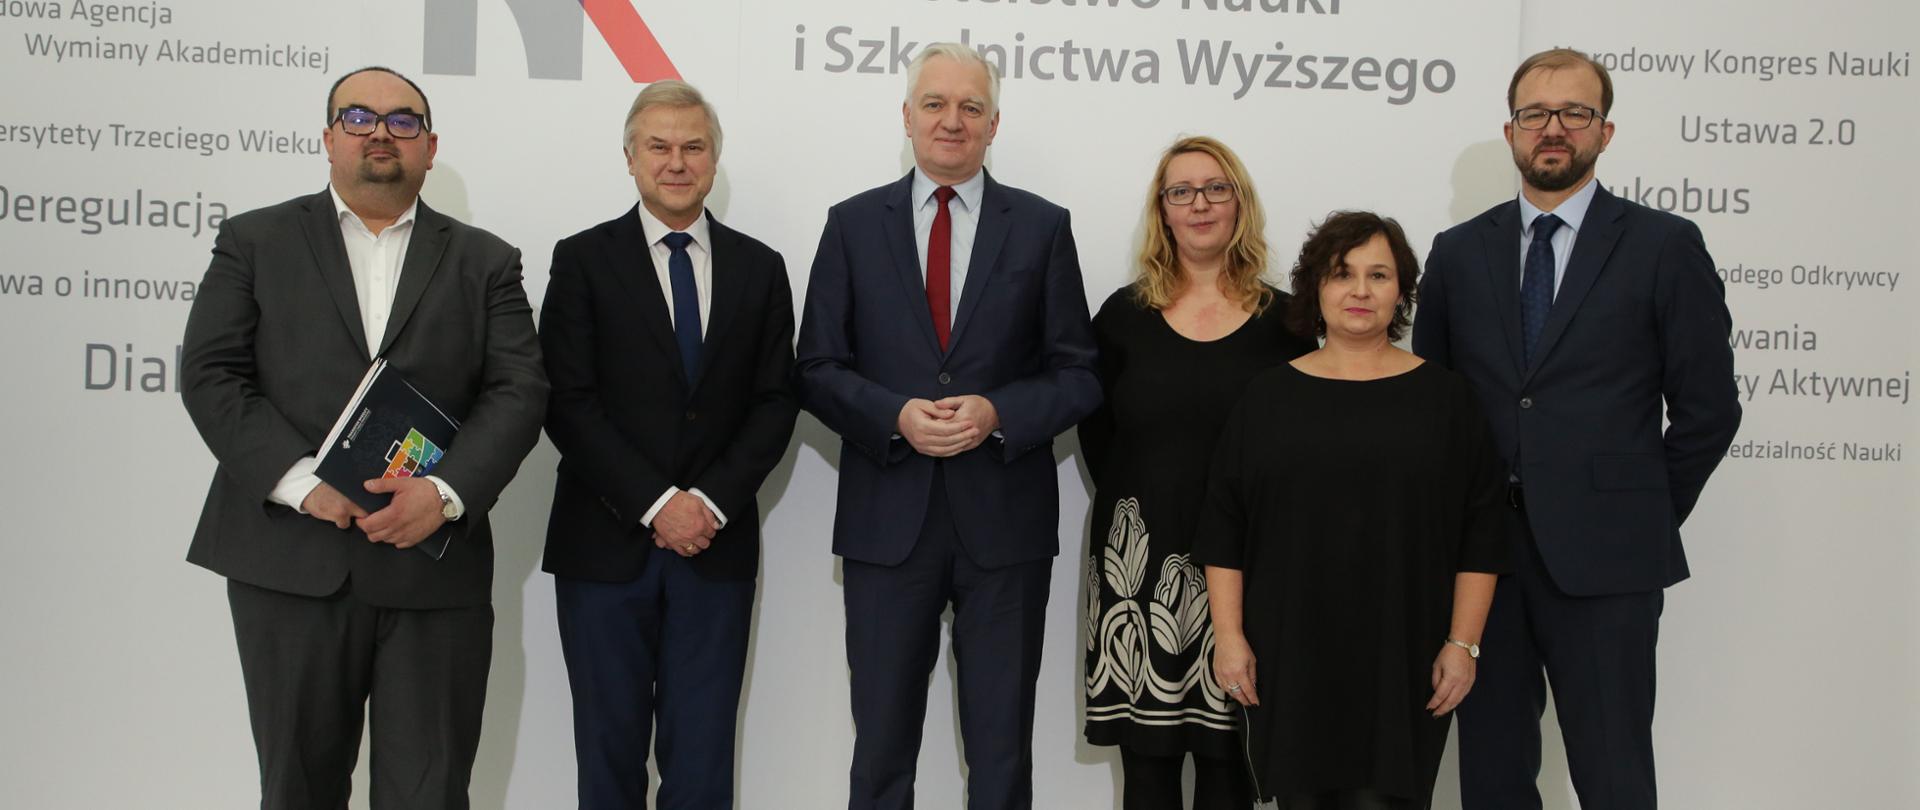 Na zdjęciu widać wicepremiera Jarosława Gowina, sekretarza stanu Piotra Dardzińskiego, dyrektora Macieja Chorowskiego i autorów kilku wybranych projektów, które wygrały w konkursie.